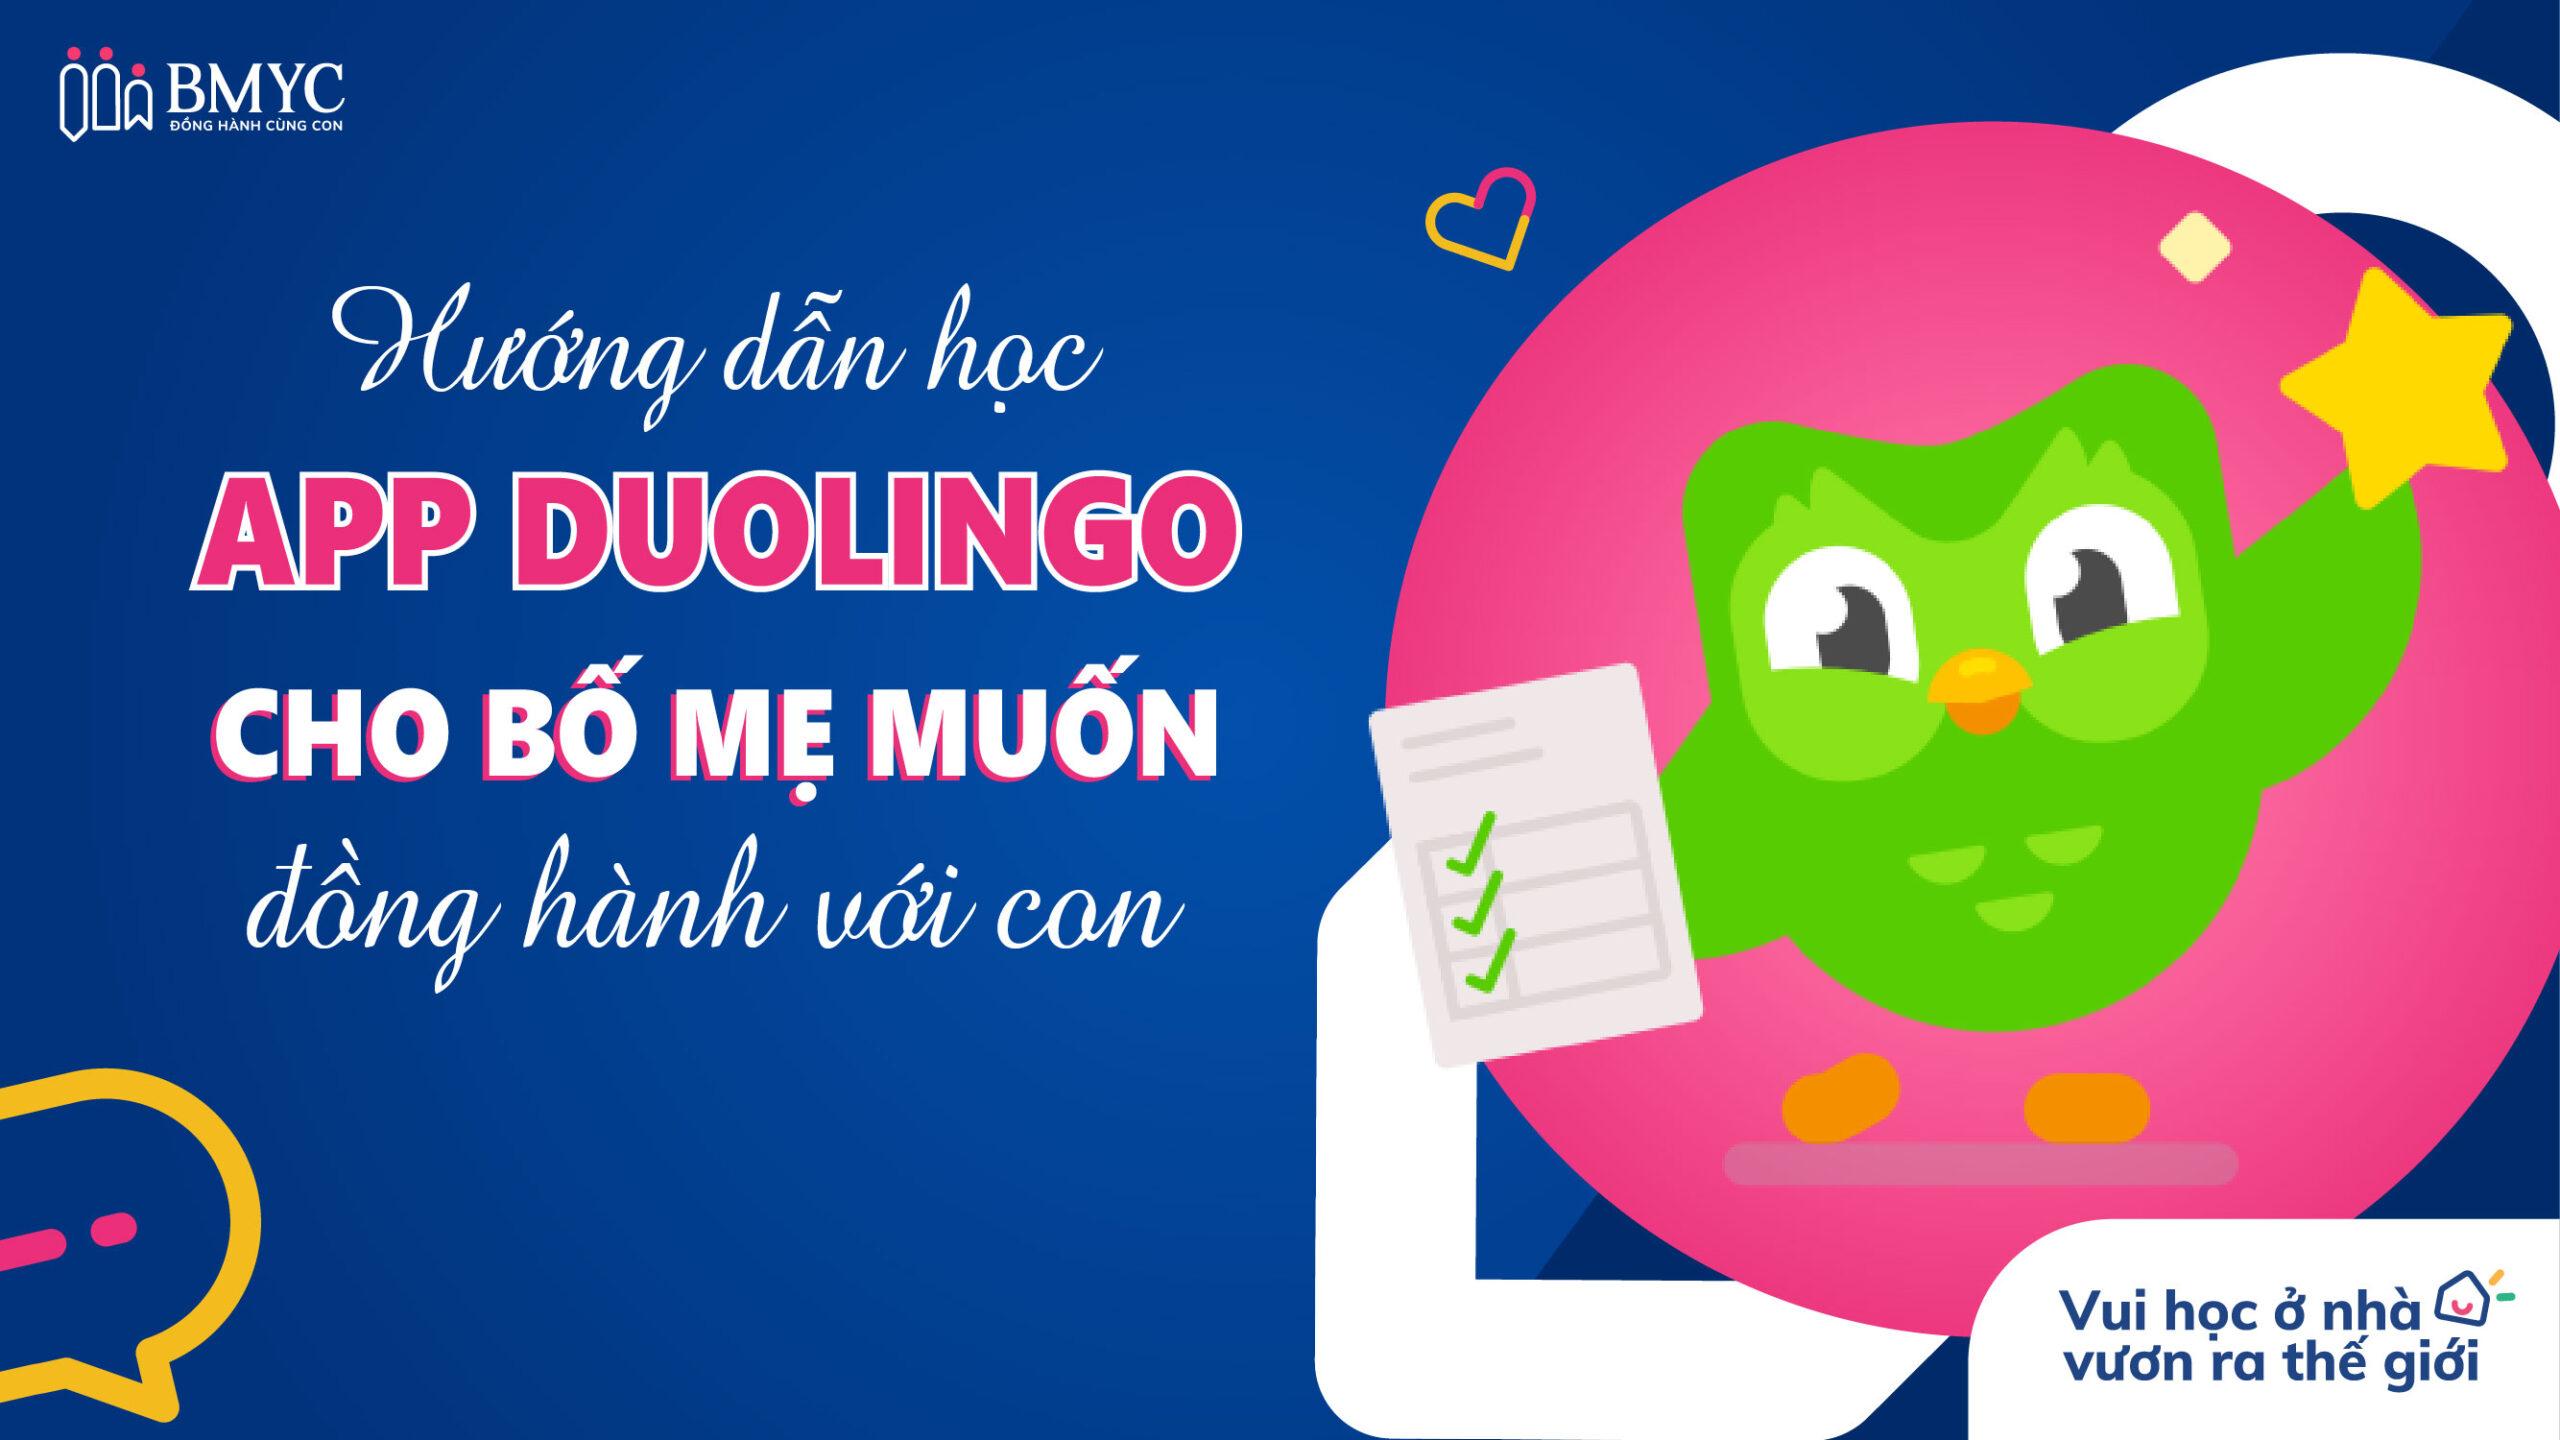 Hướng dẫn học App Duolingo cho bố mẹ muốn đồng hành cùng con